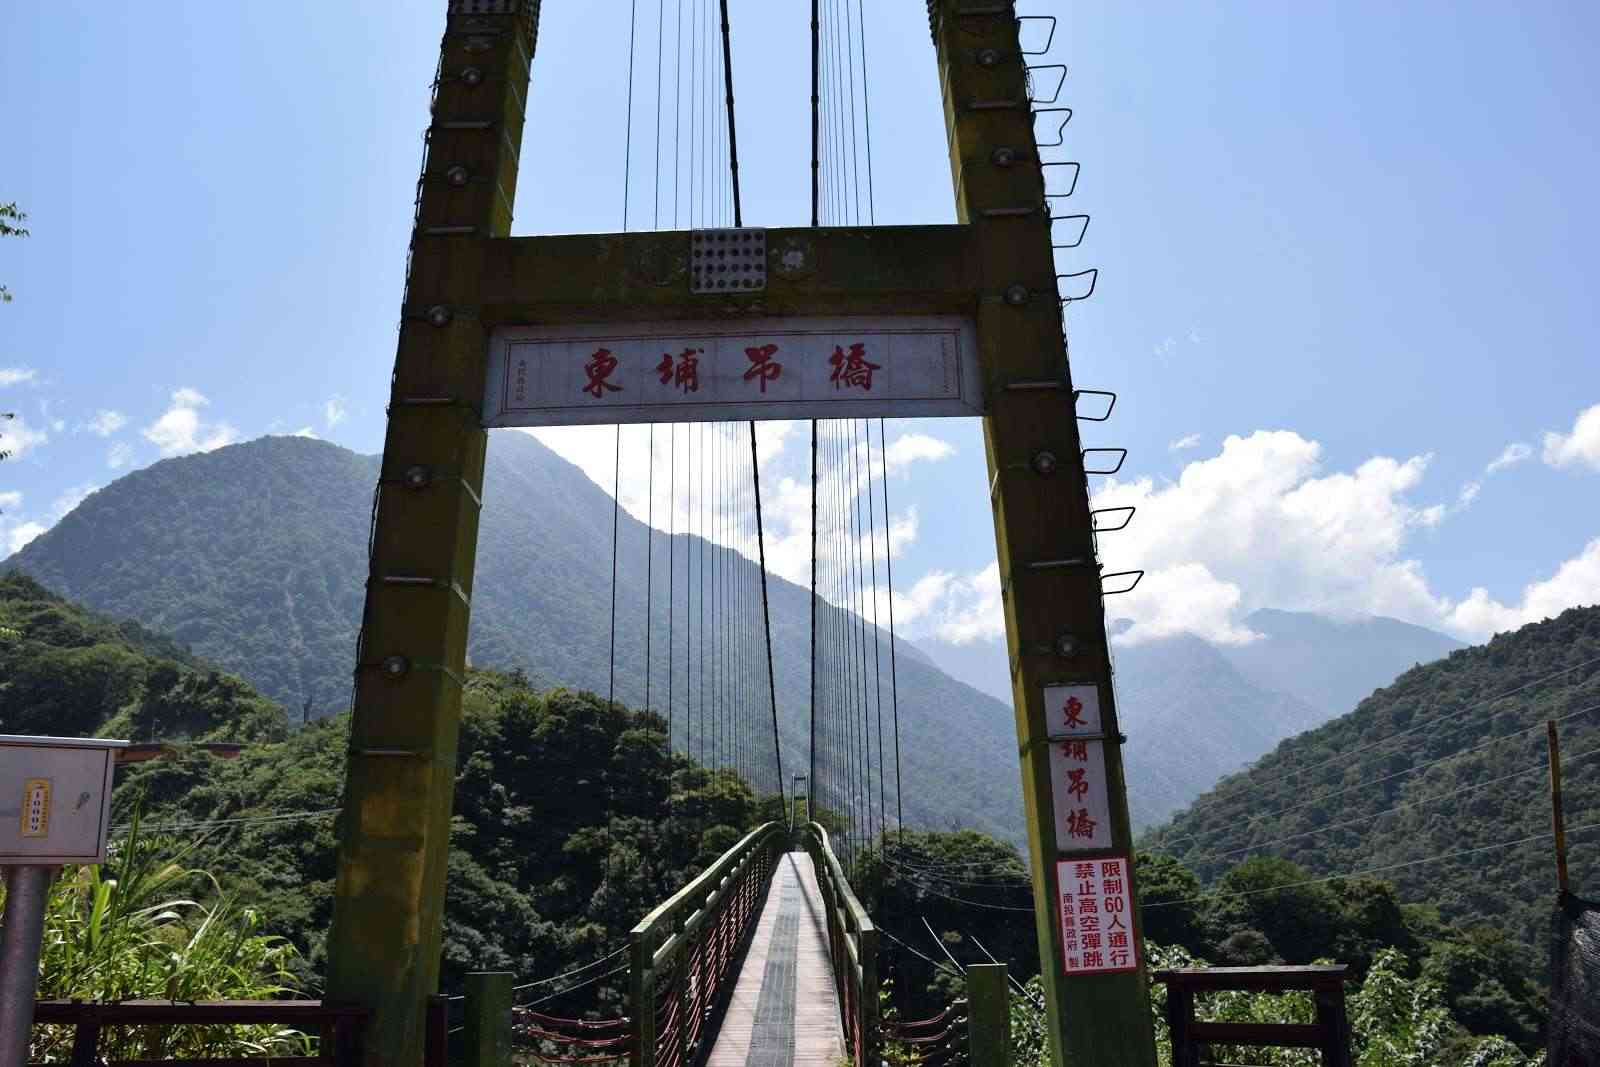 東埔吊橋/ 攝影者: 林小龍

(由第三方資訊提供)